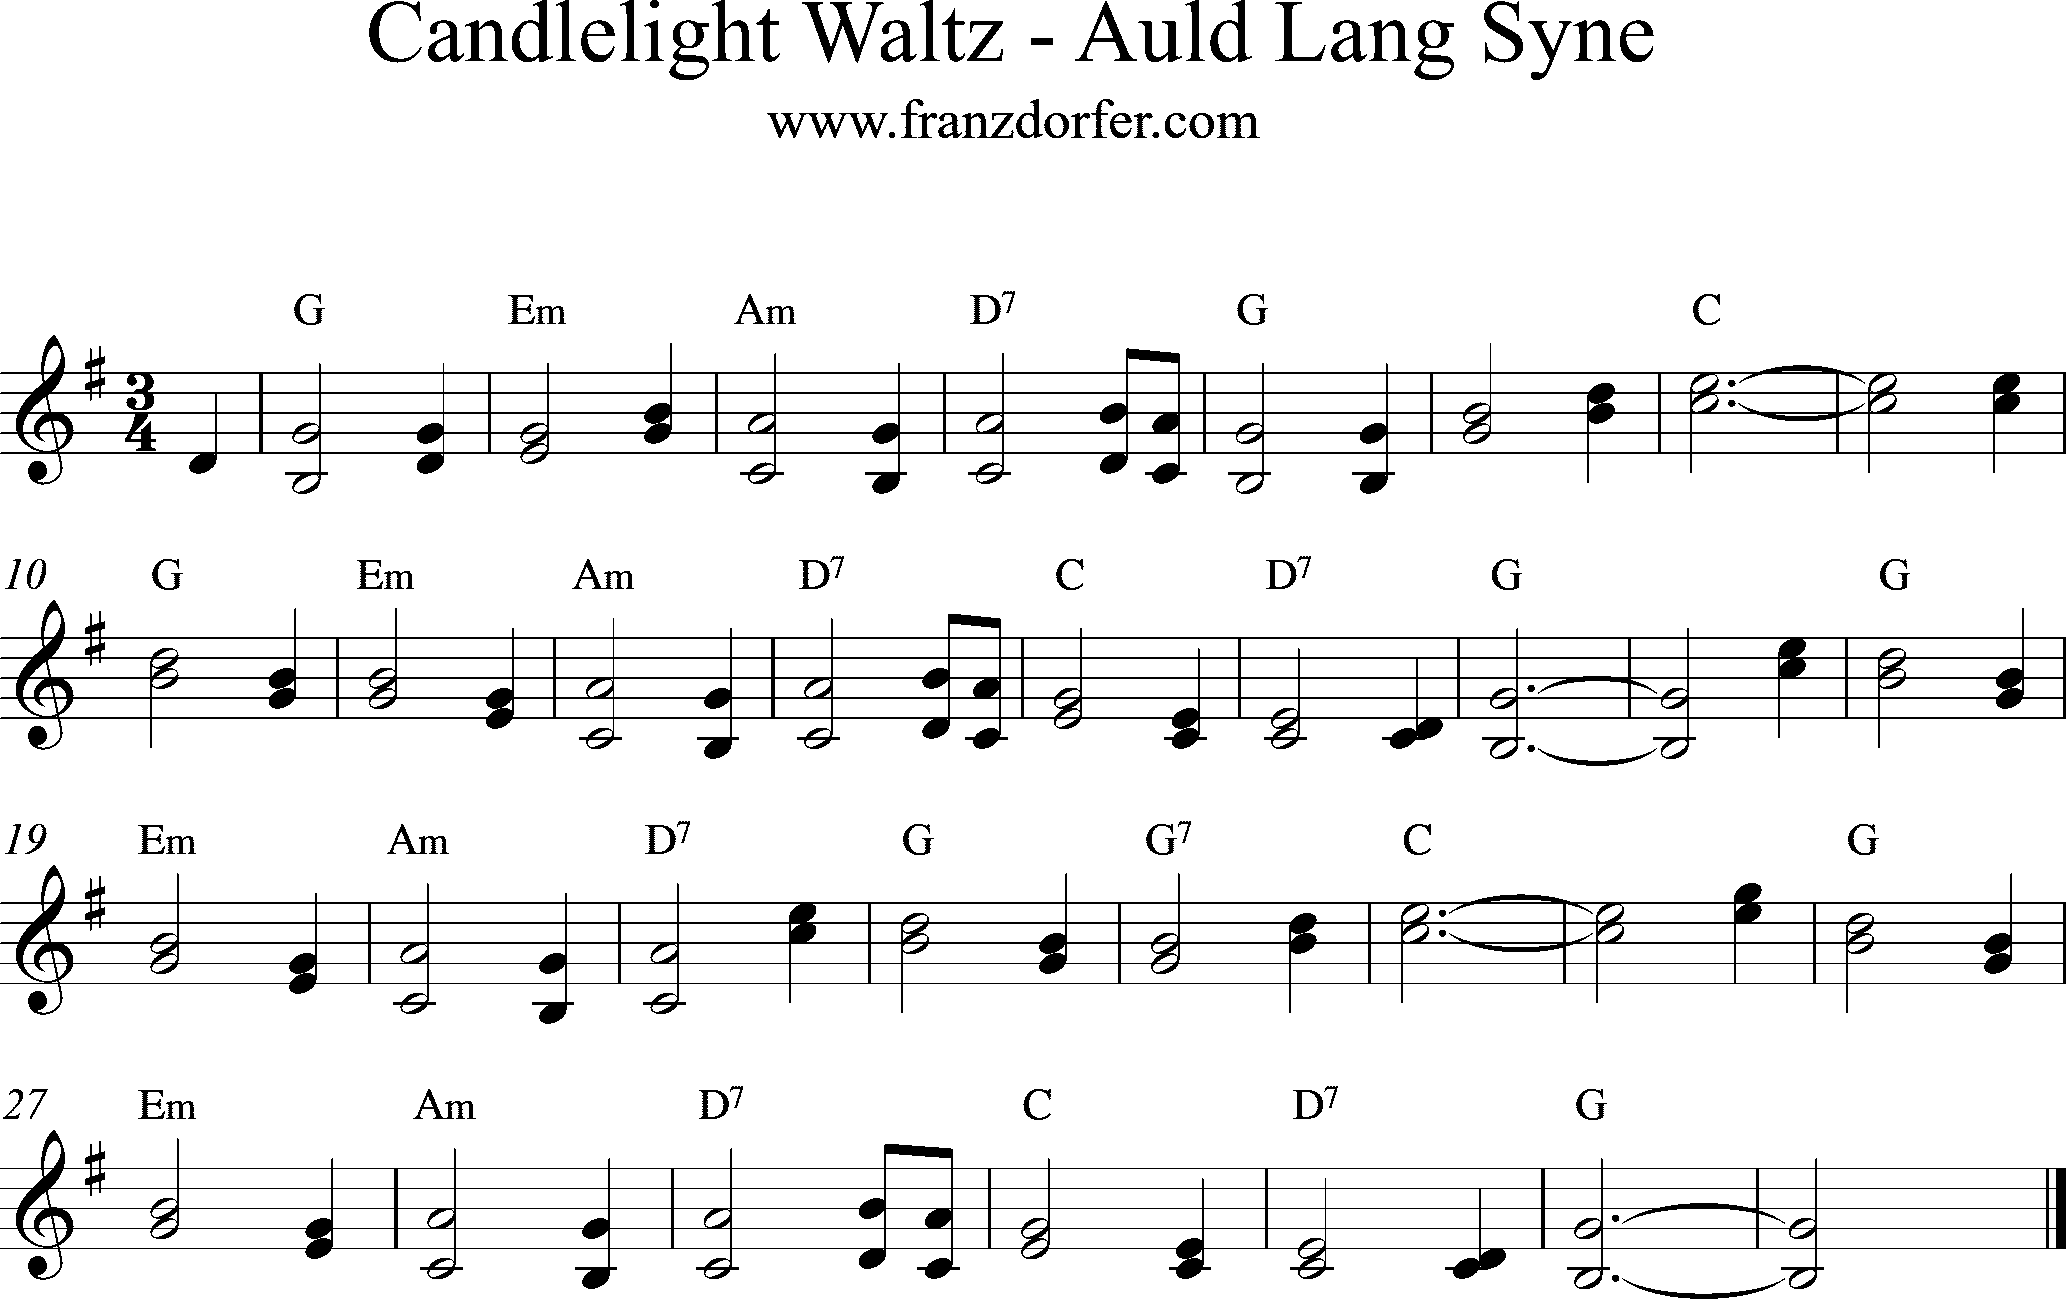 Noten - Candlelight Waltz